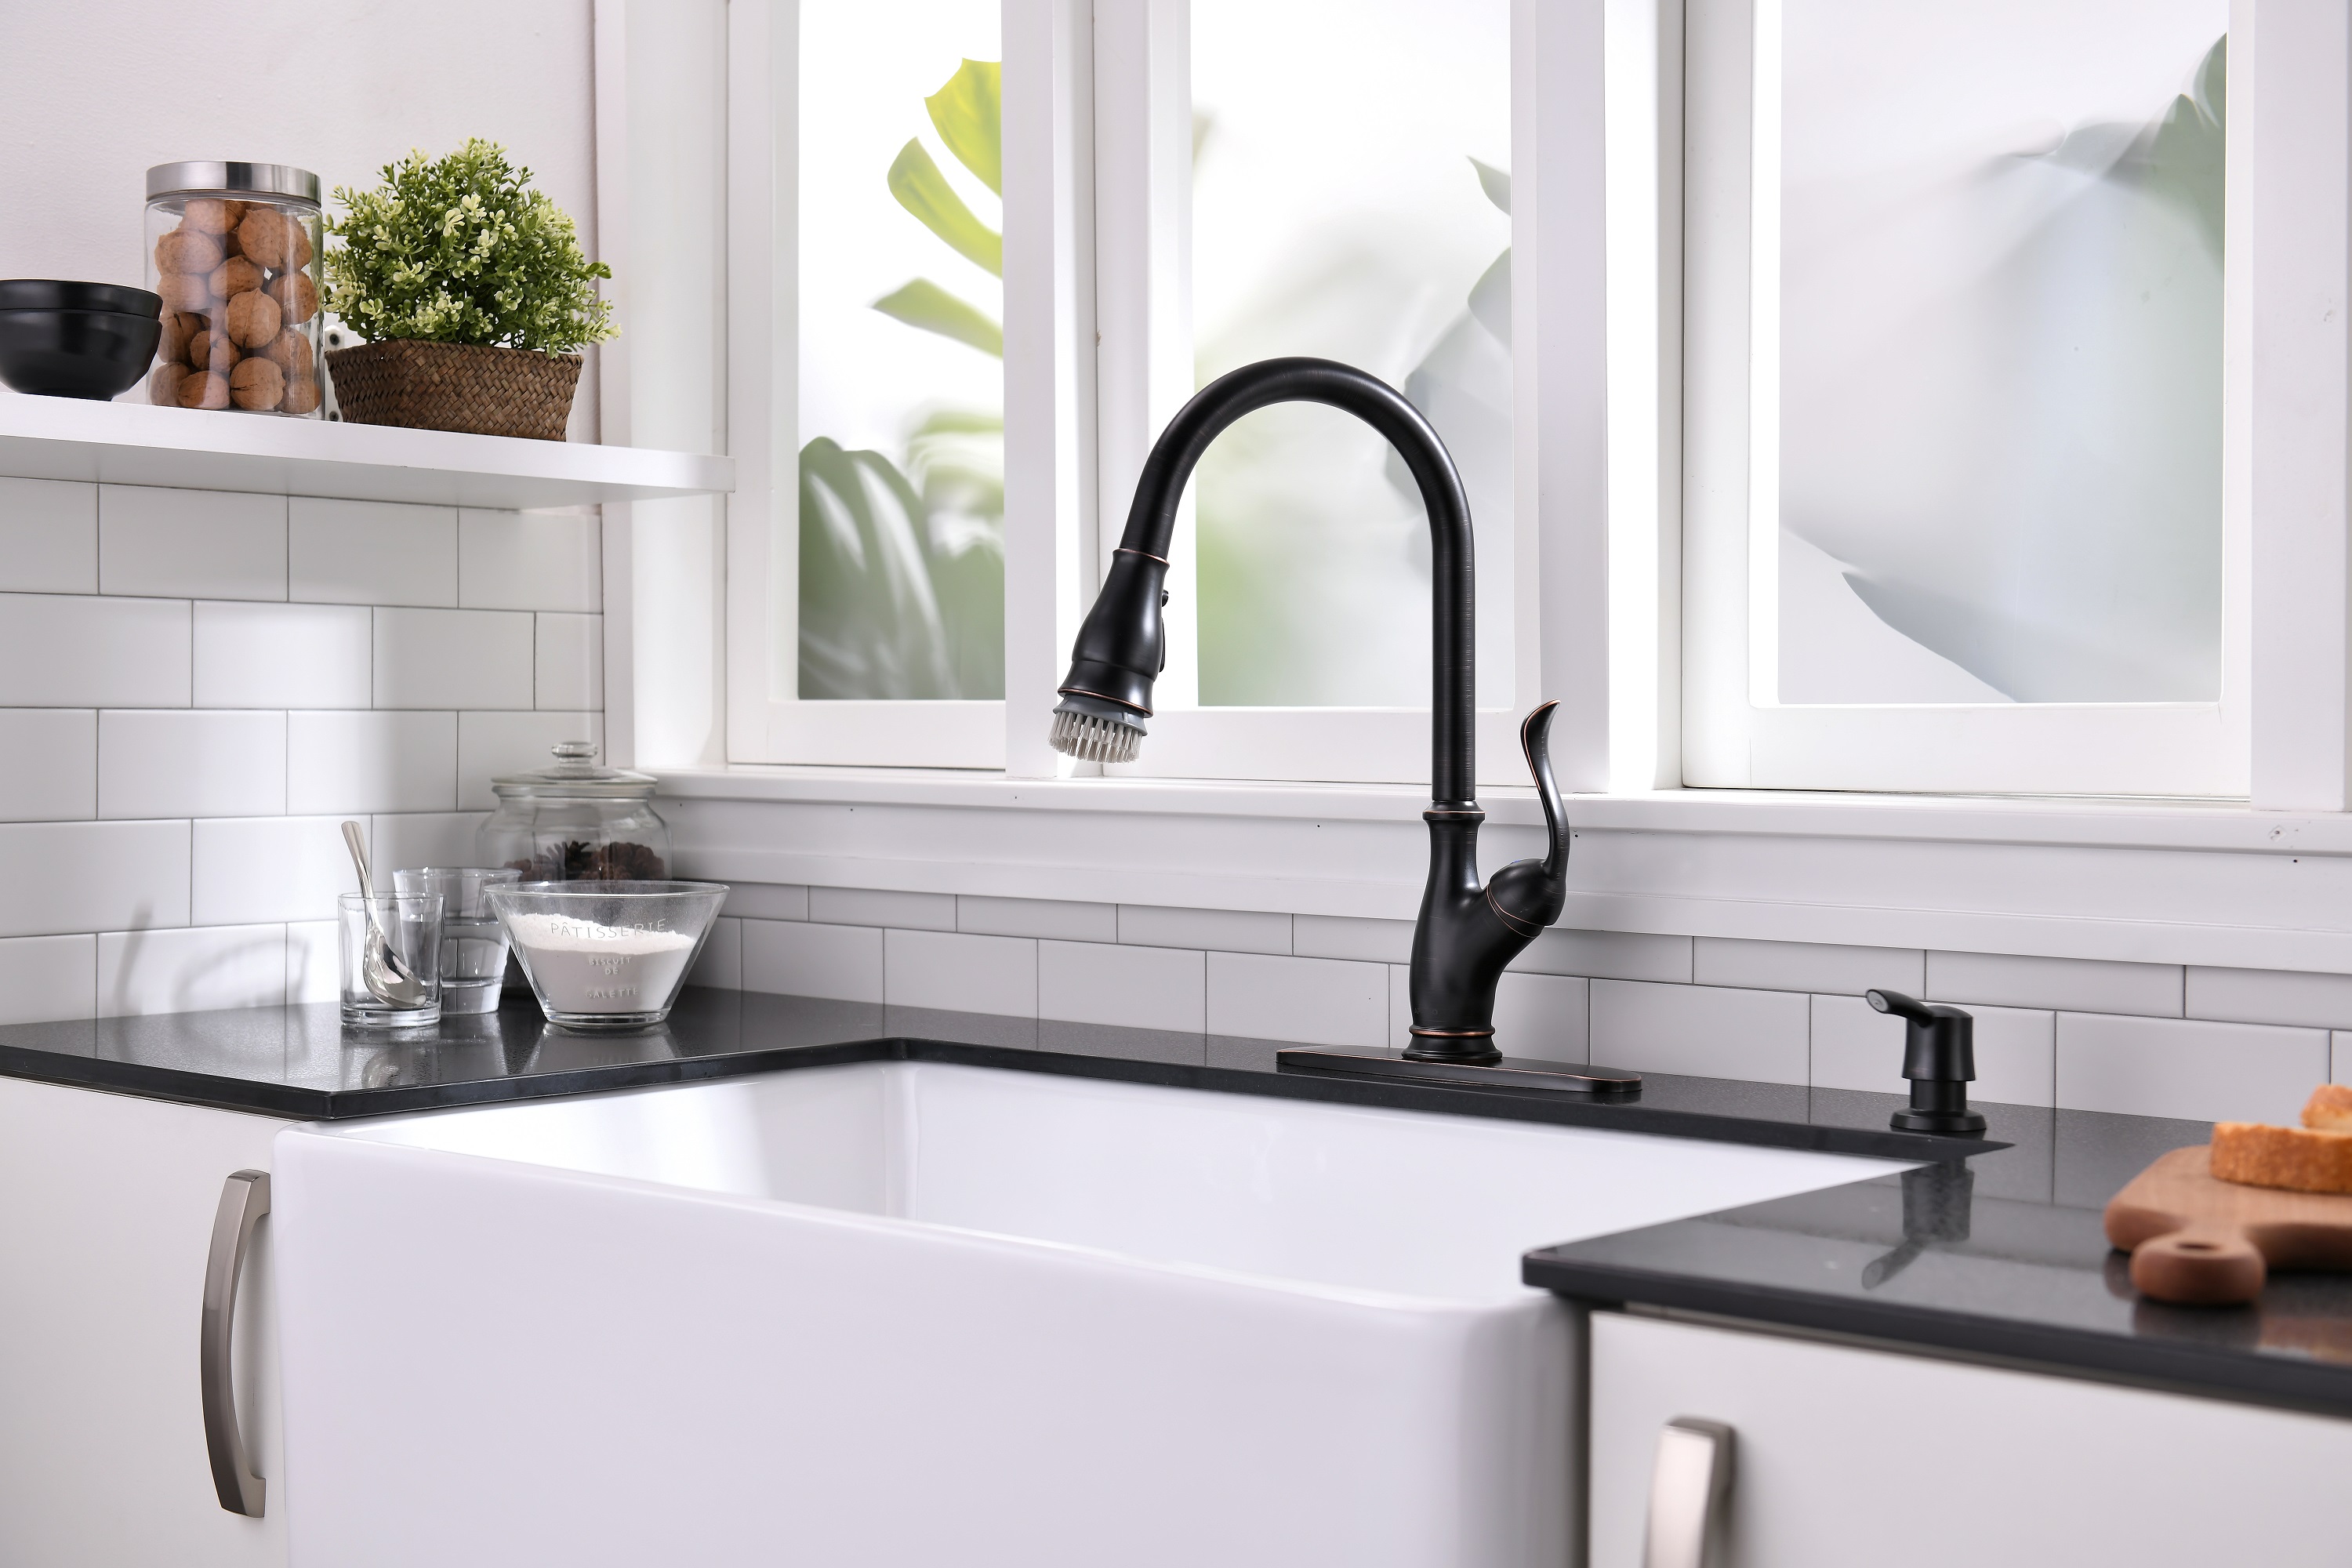 Adopter l'élégance et le style : des robinets noirs pour les cuisines modernes